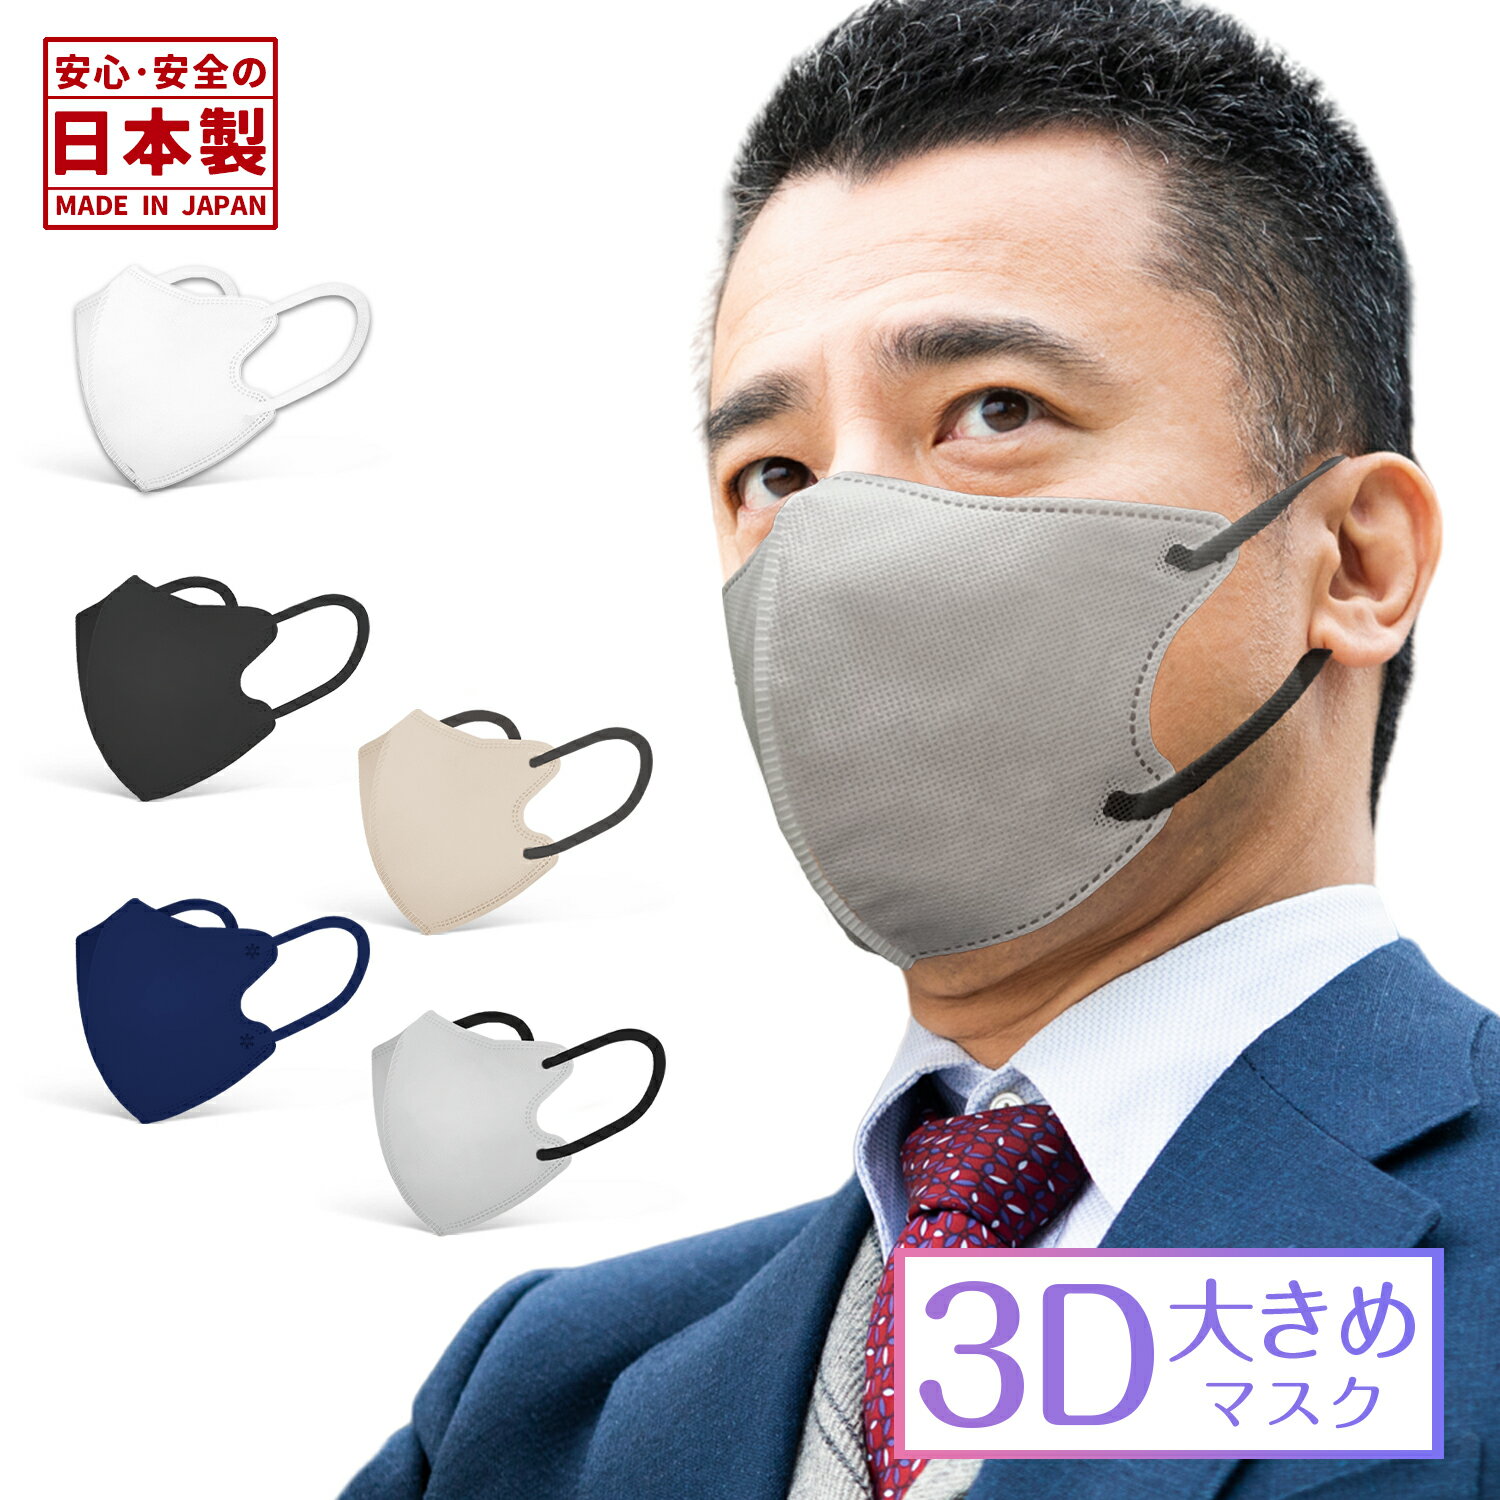 日本製 3Dマスク 大きめ 30枚 男性 大きい サイズ バイカラーマスク バイカラー 3層構造 息しやすい 大人用 不織布 カラーマスク 熱中症 花粉対策 おしゃれ 男性用マスク 女性用マスク ボーイズマスクインフルエンザ予防 男性用